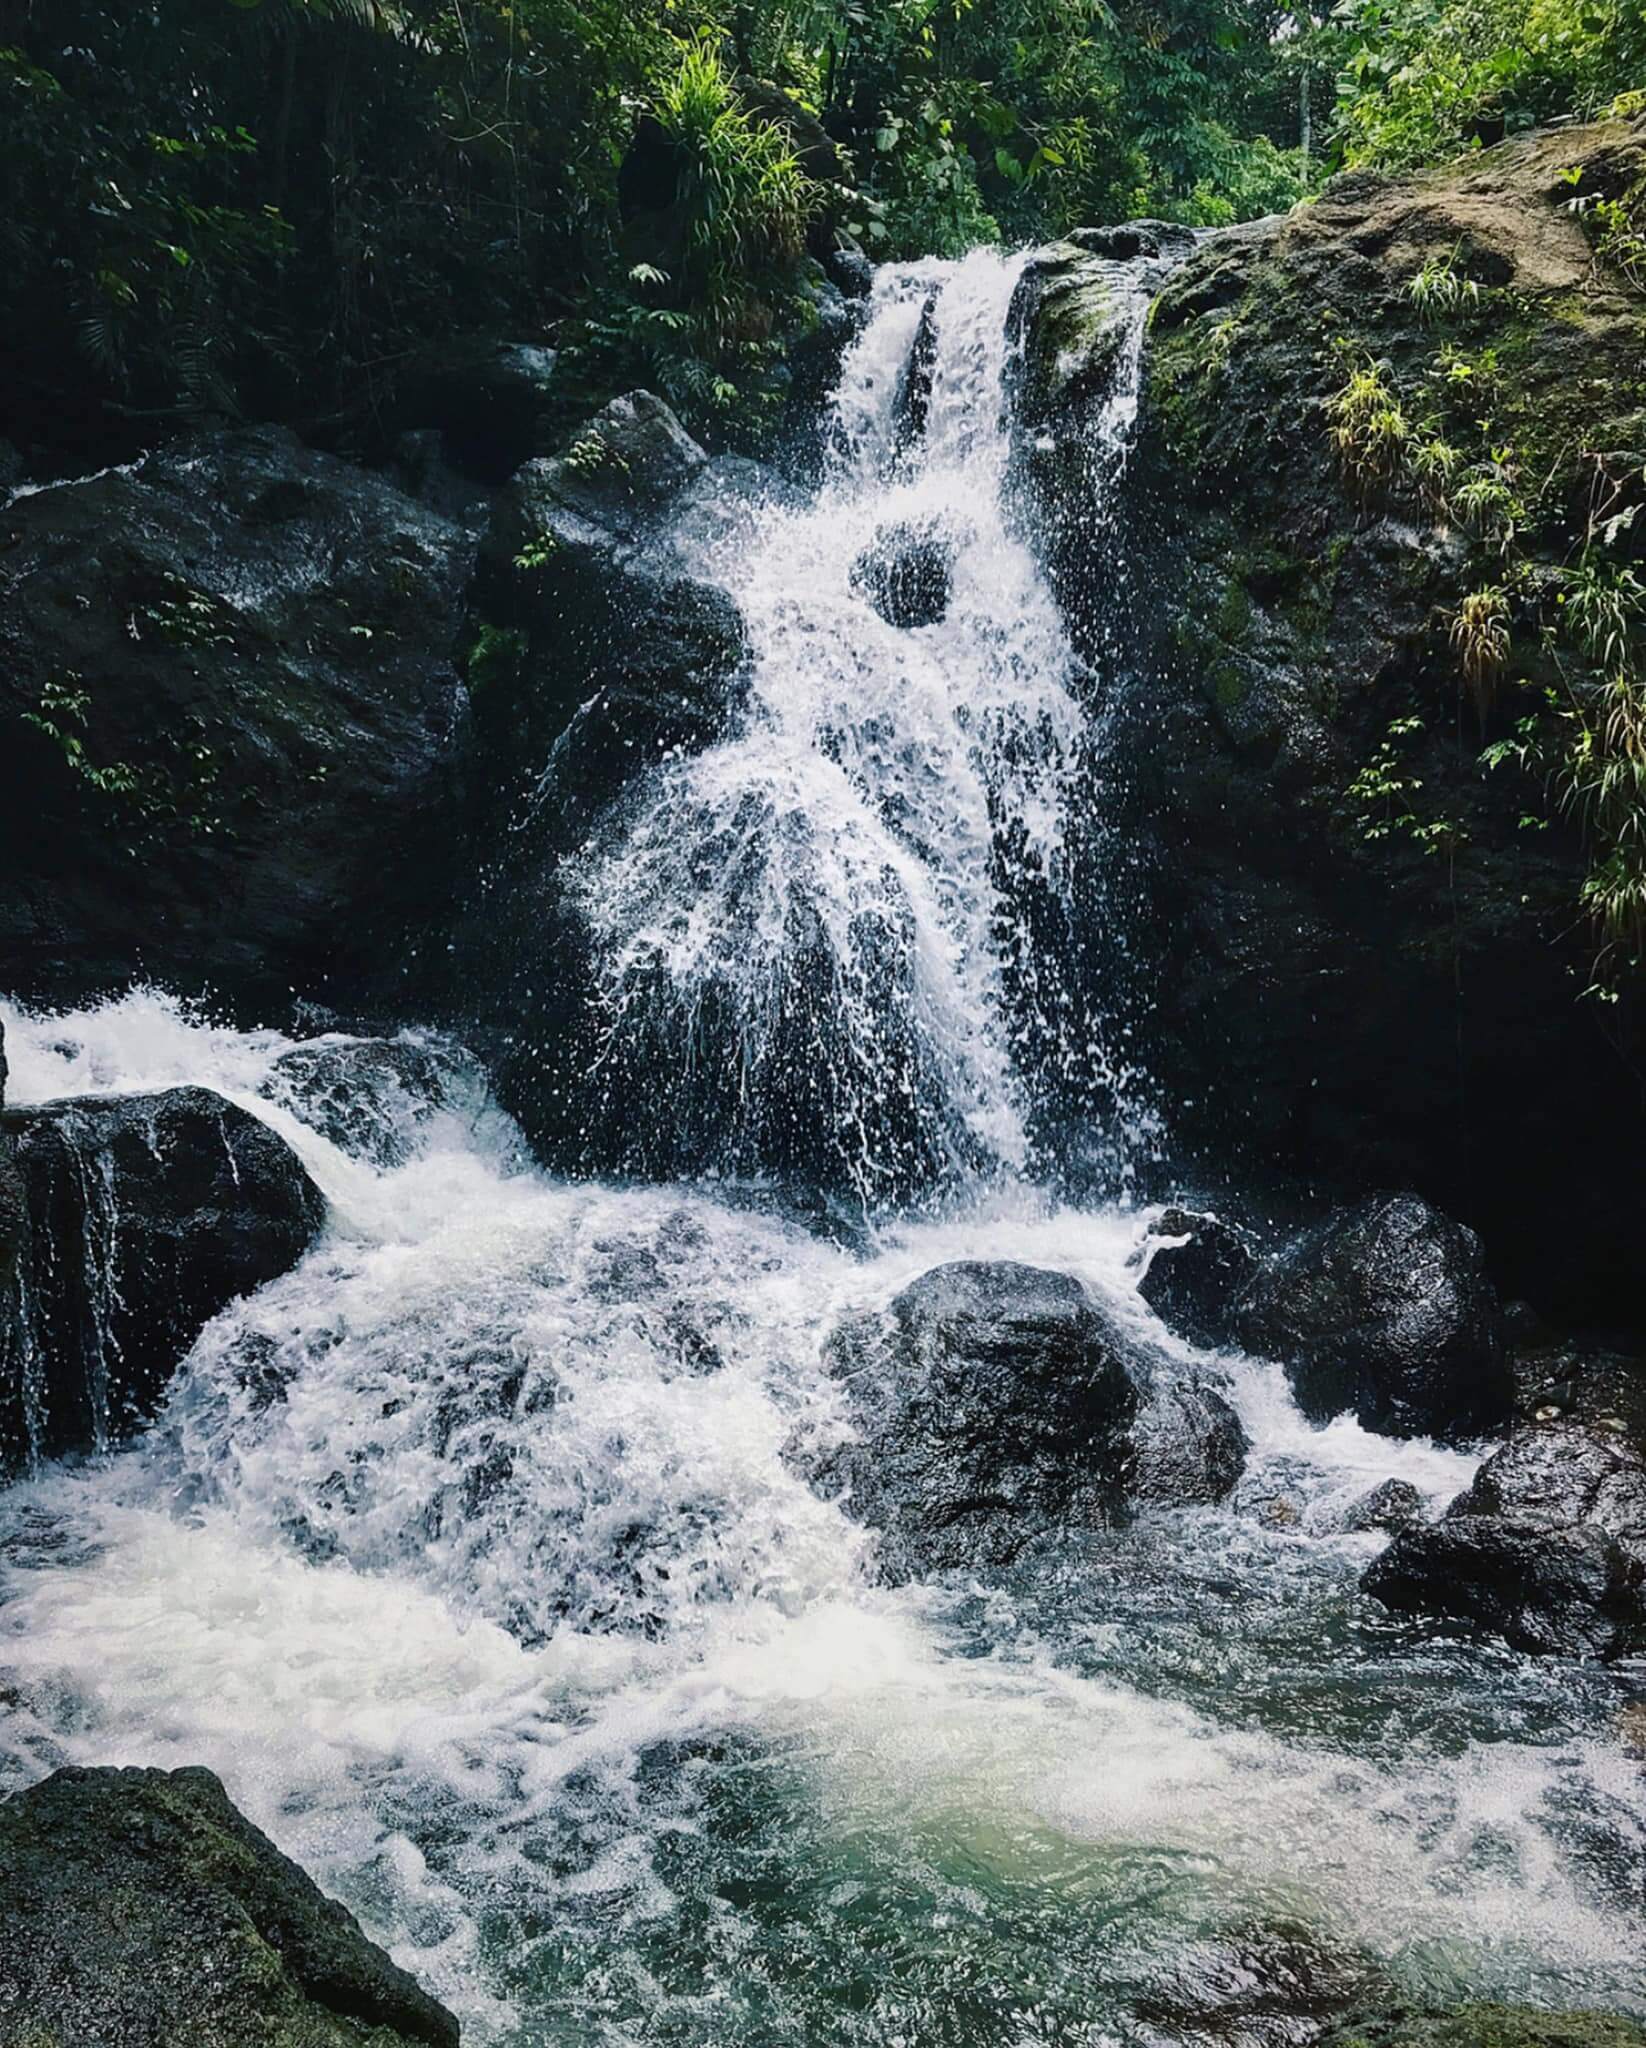 Siok Falls at Brgy. Mabini